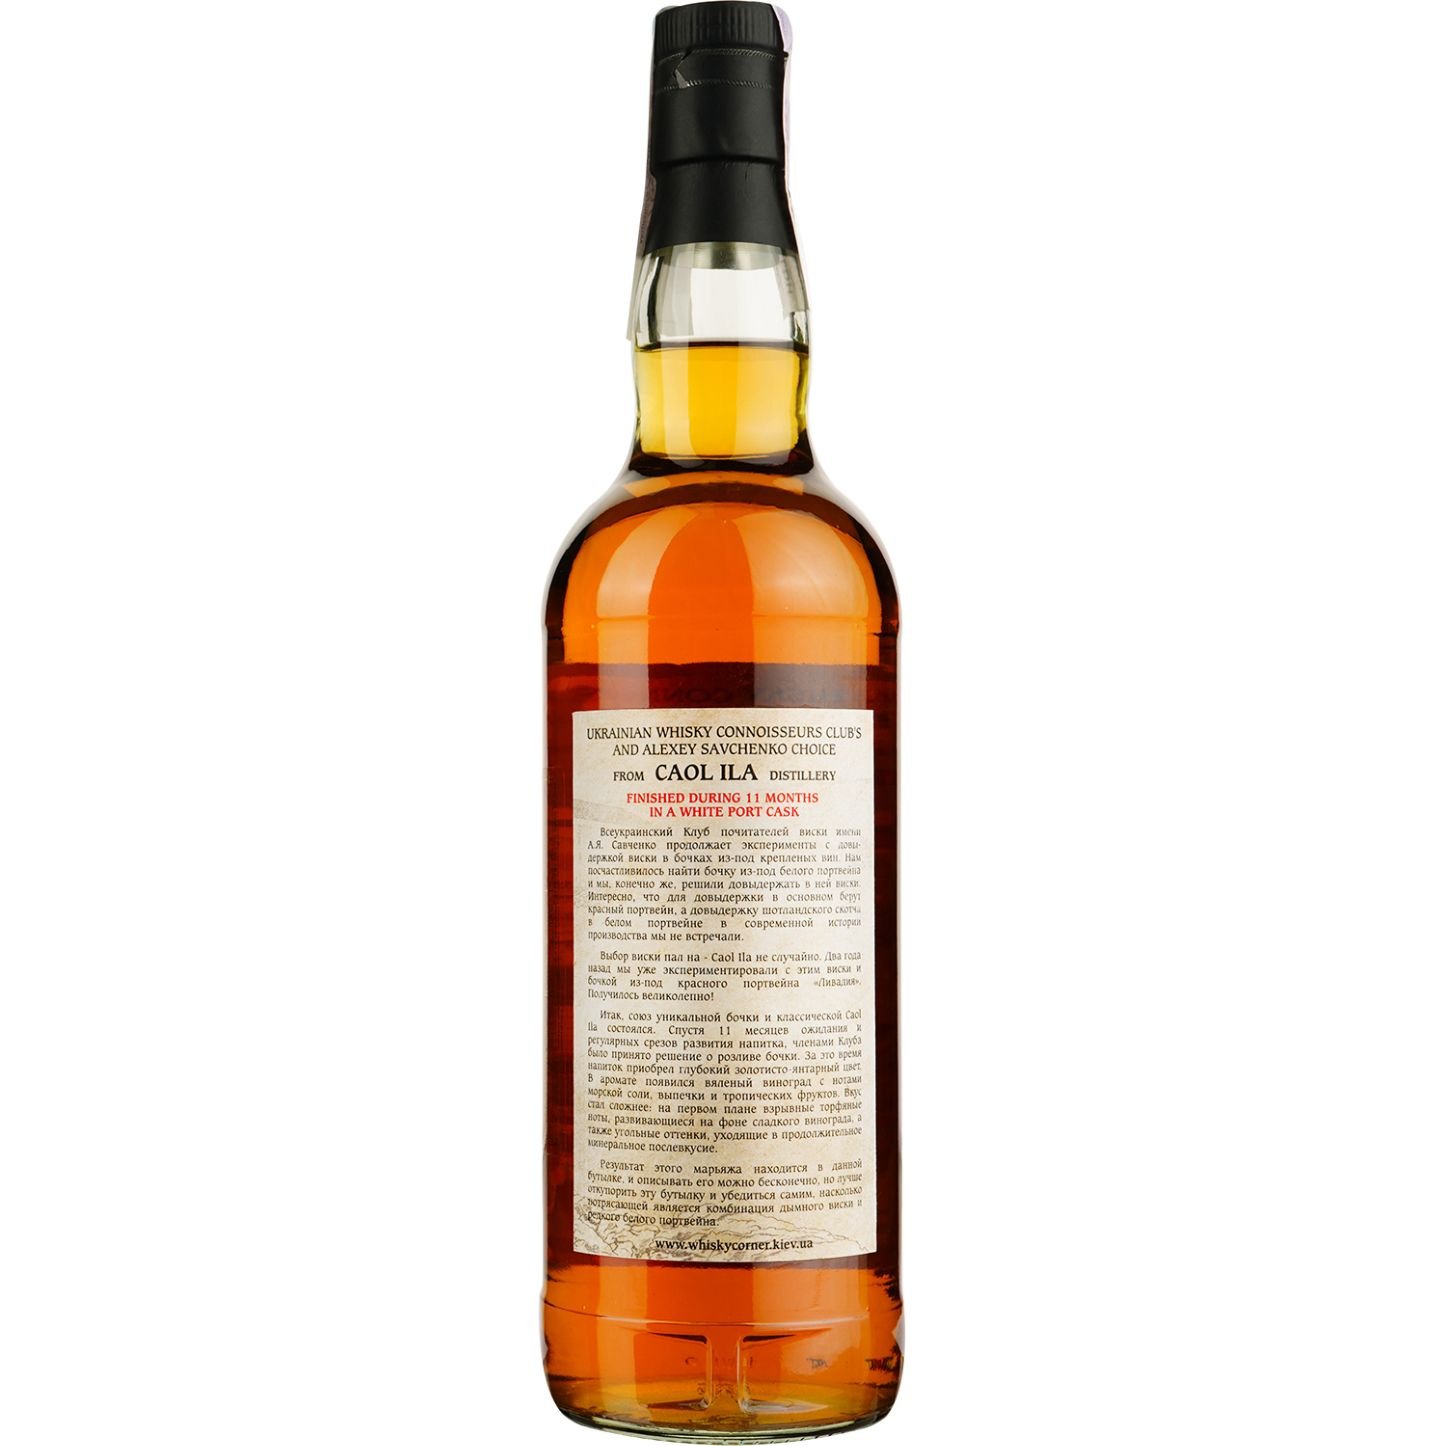 Віскі Caol Ila 13 Years Old White Porto Single Malt Scotch Whisky, у подарунковій упаковці, 55,2%, 0,7 л - фото 4